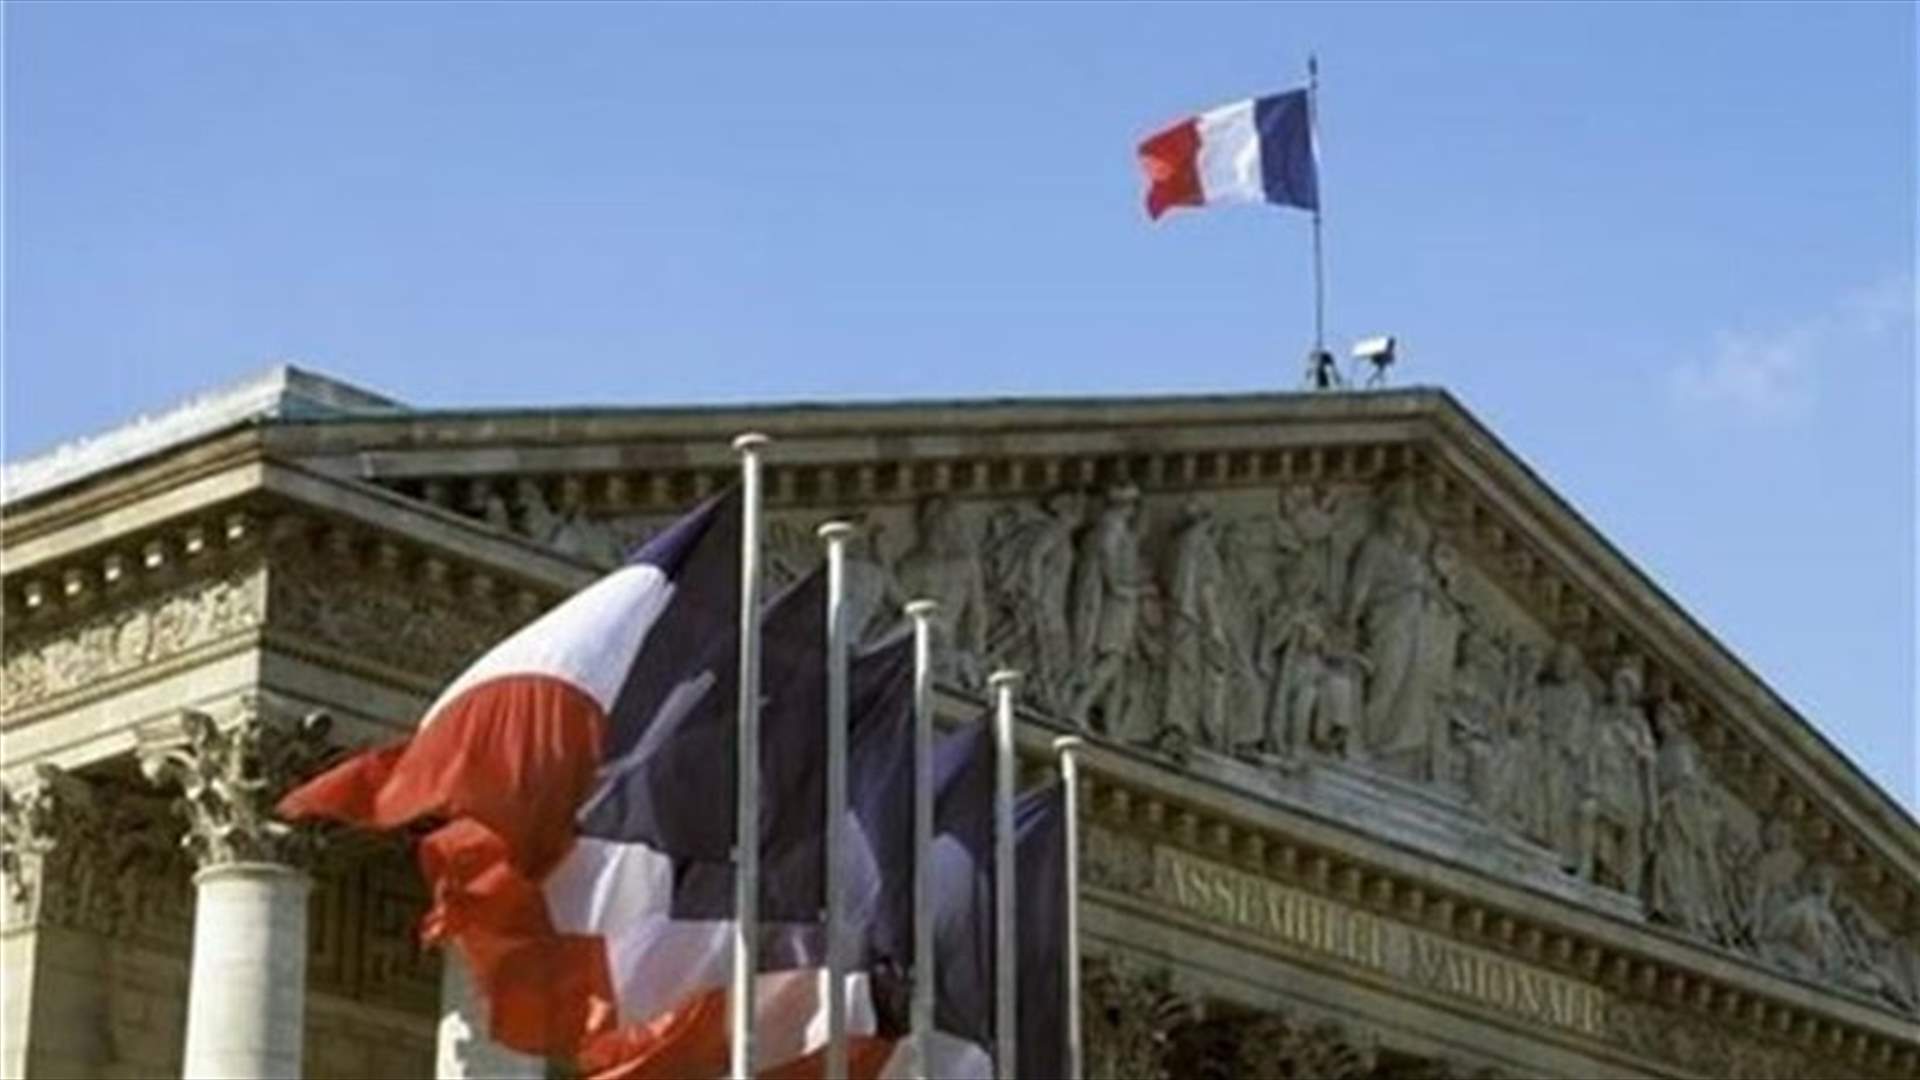 وزارة الخارجية الفرنسية: لا دليل على وجود مخازن متفجرات لحزب الله في فرنسا